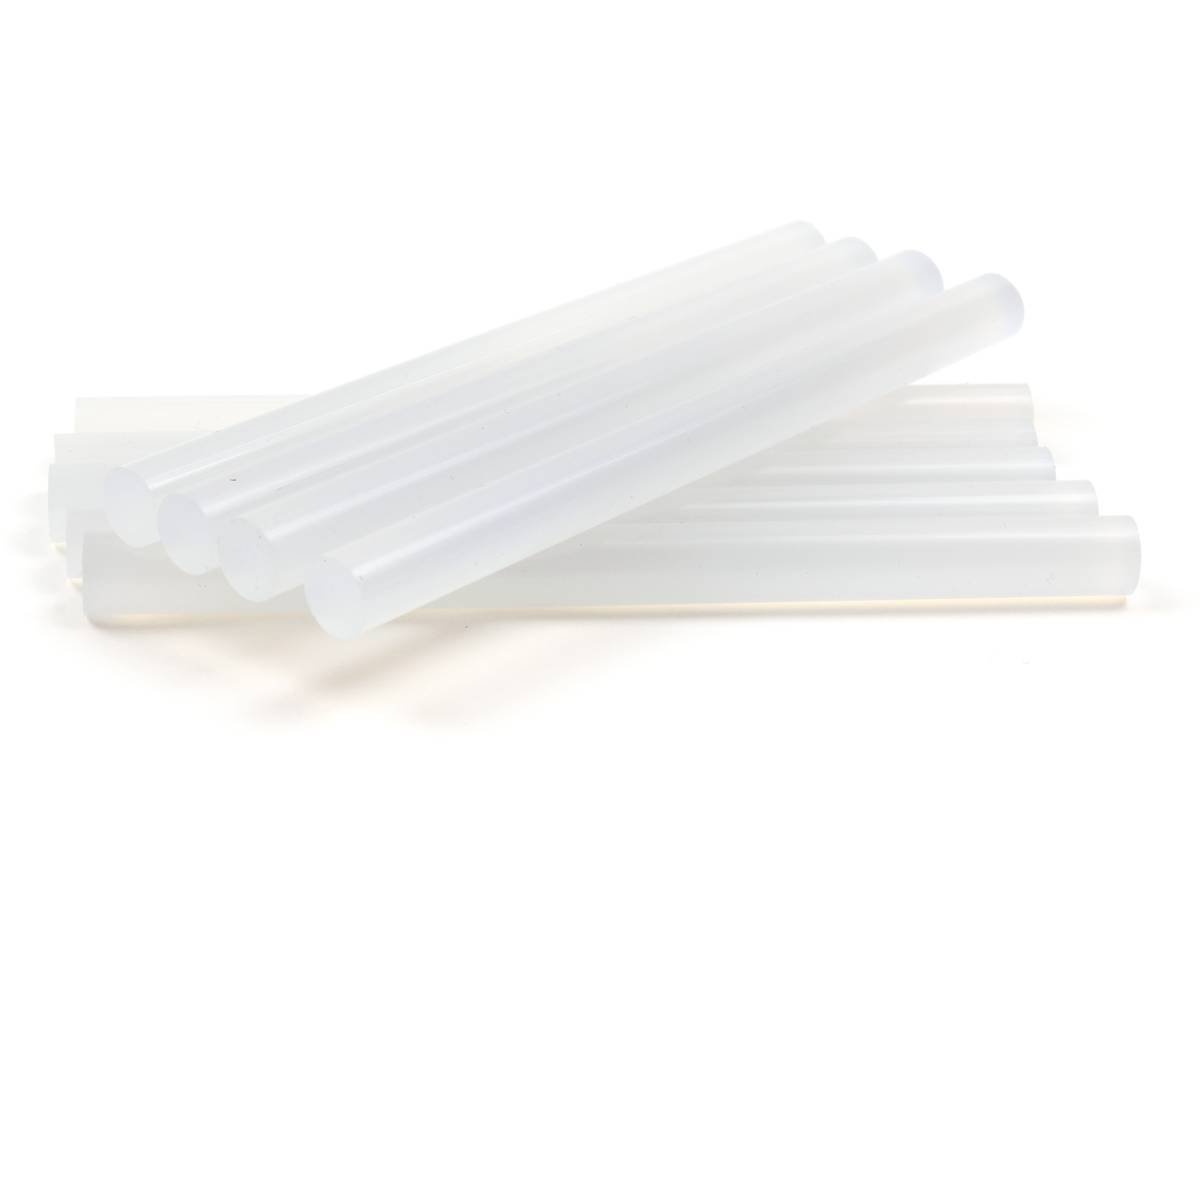 5 Standard Pack Glue Gun Clear Sticks 1159 (Parcel Rate)